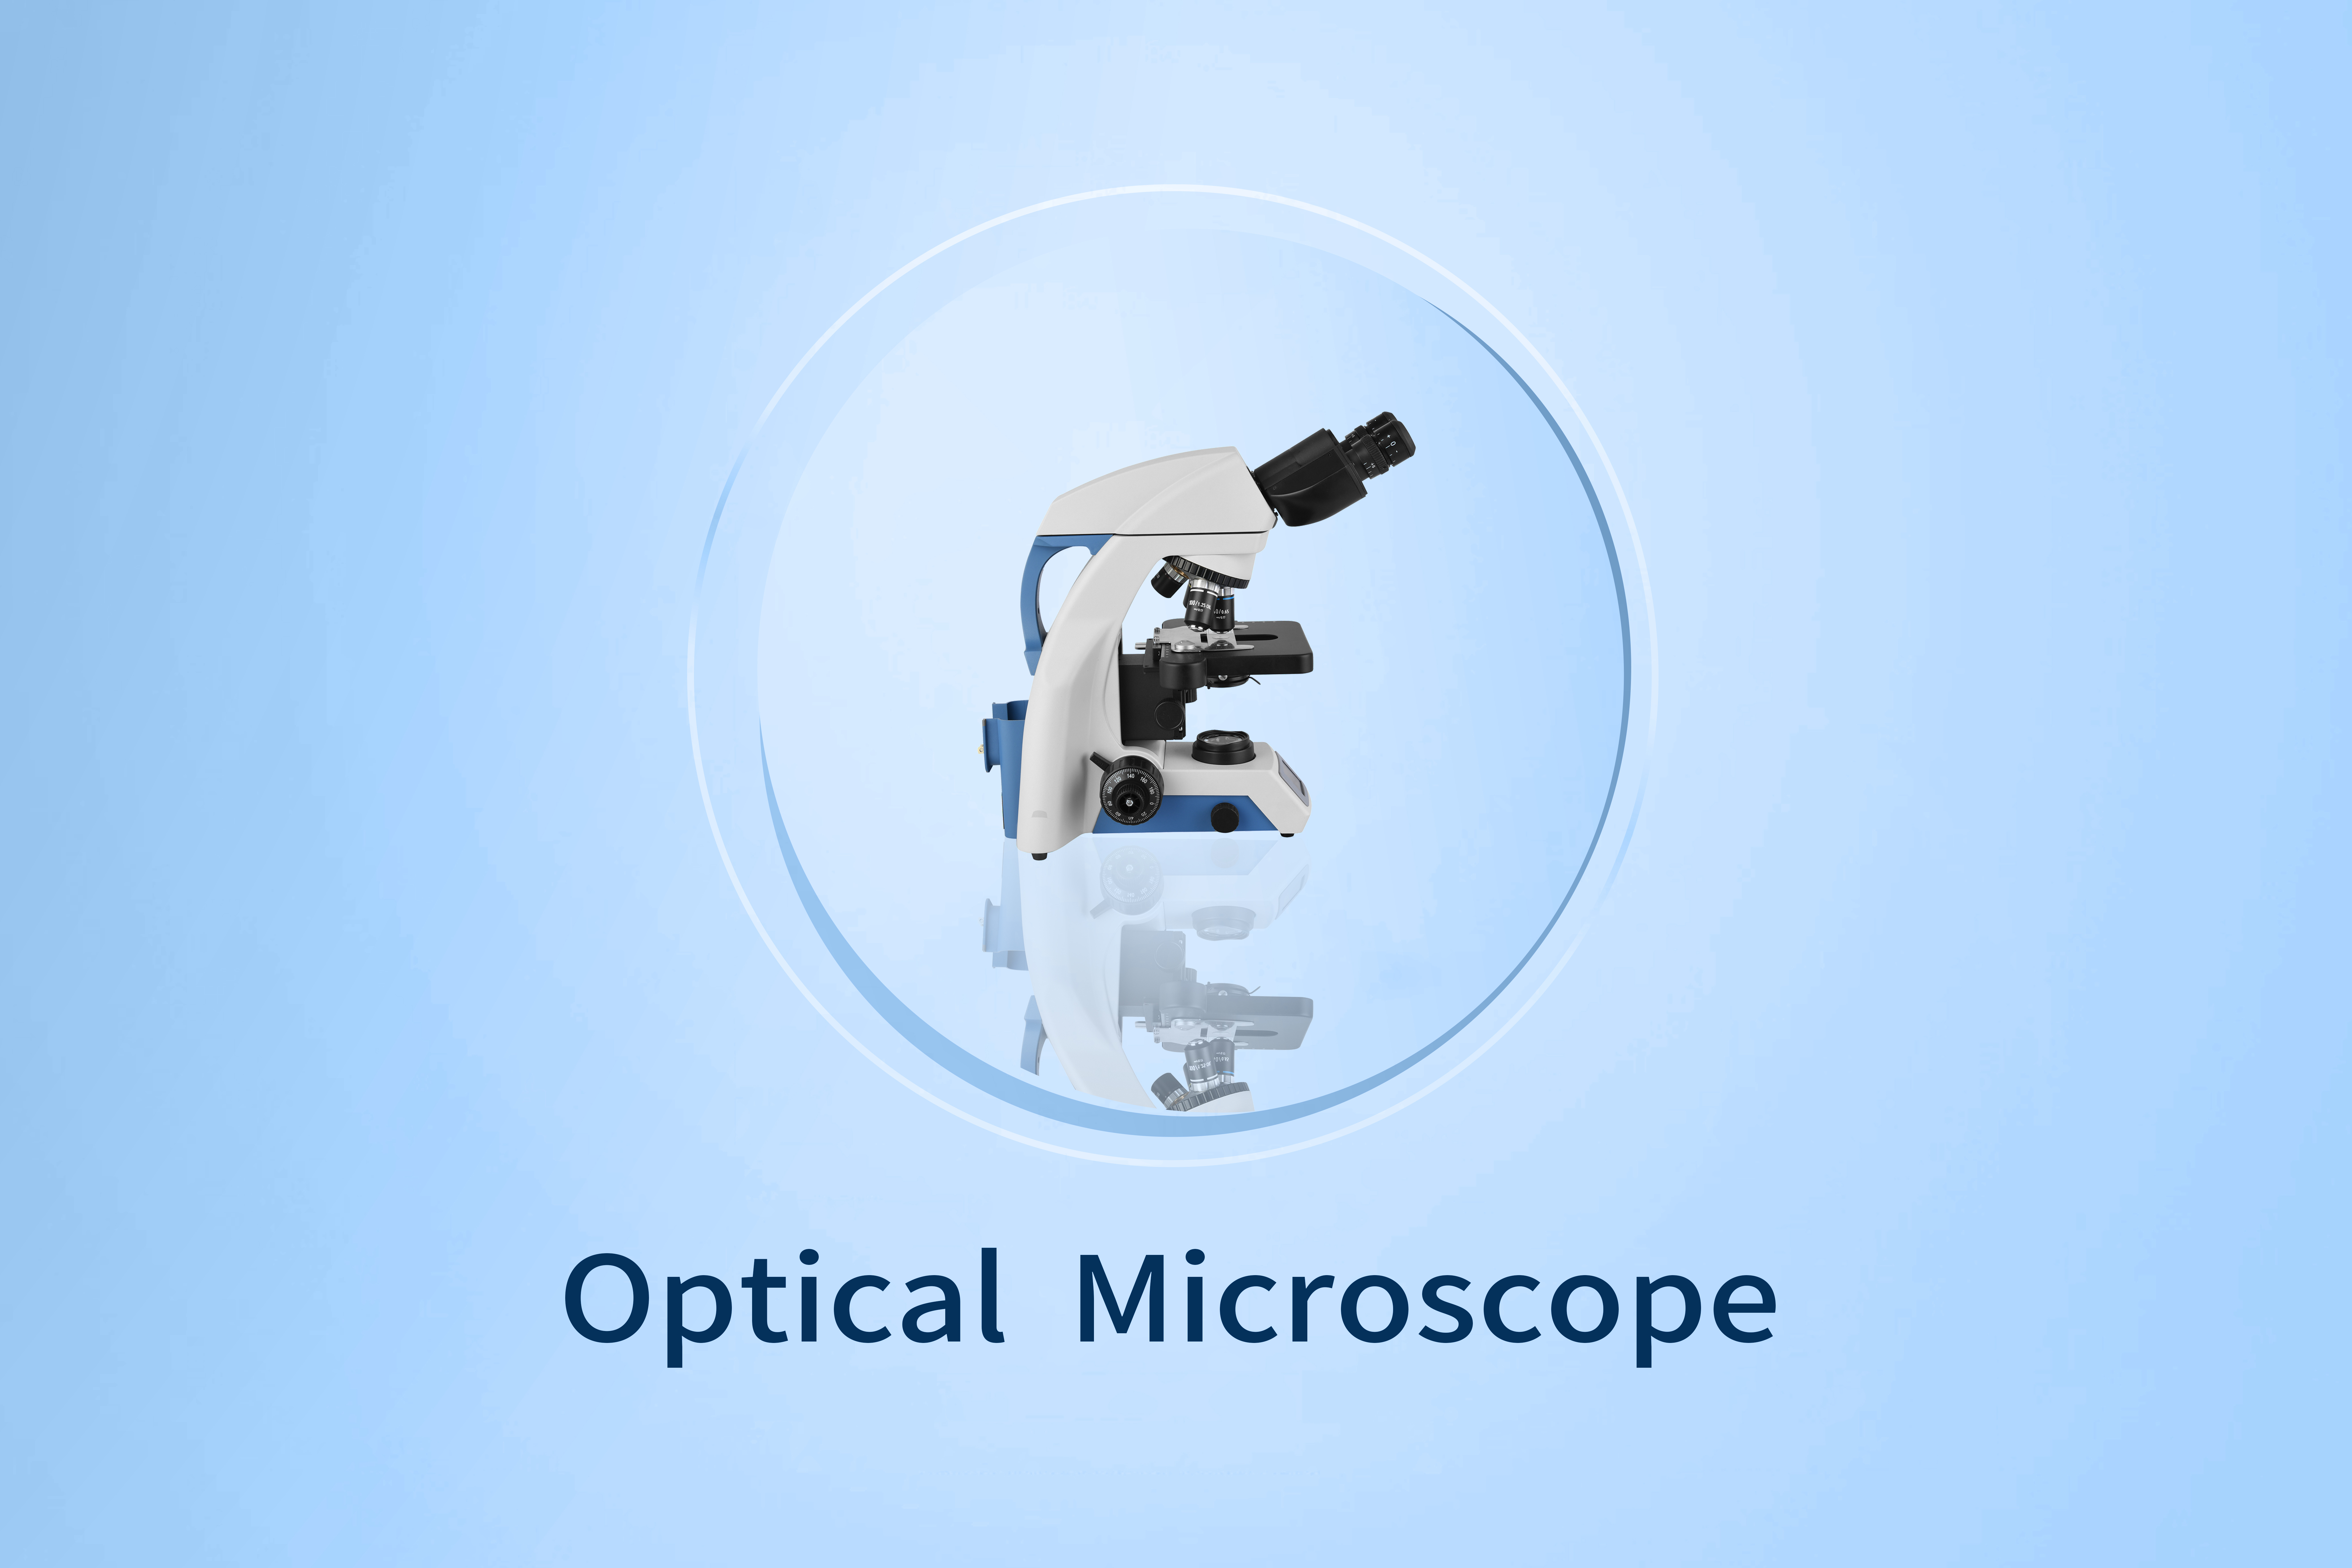 Berapa Banyak Jenis Mikroskop Optik?